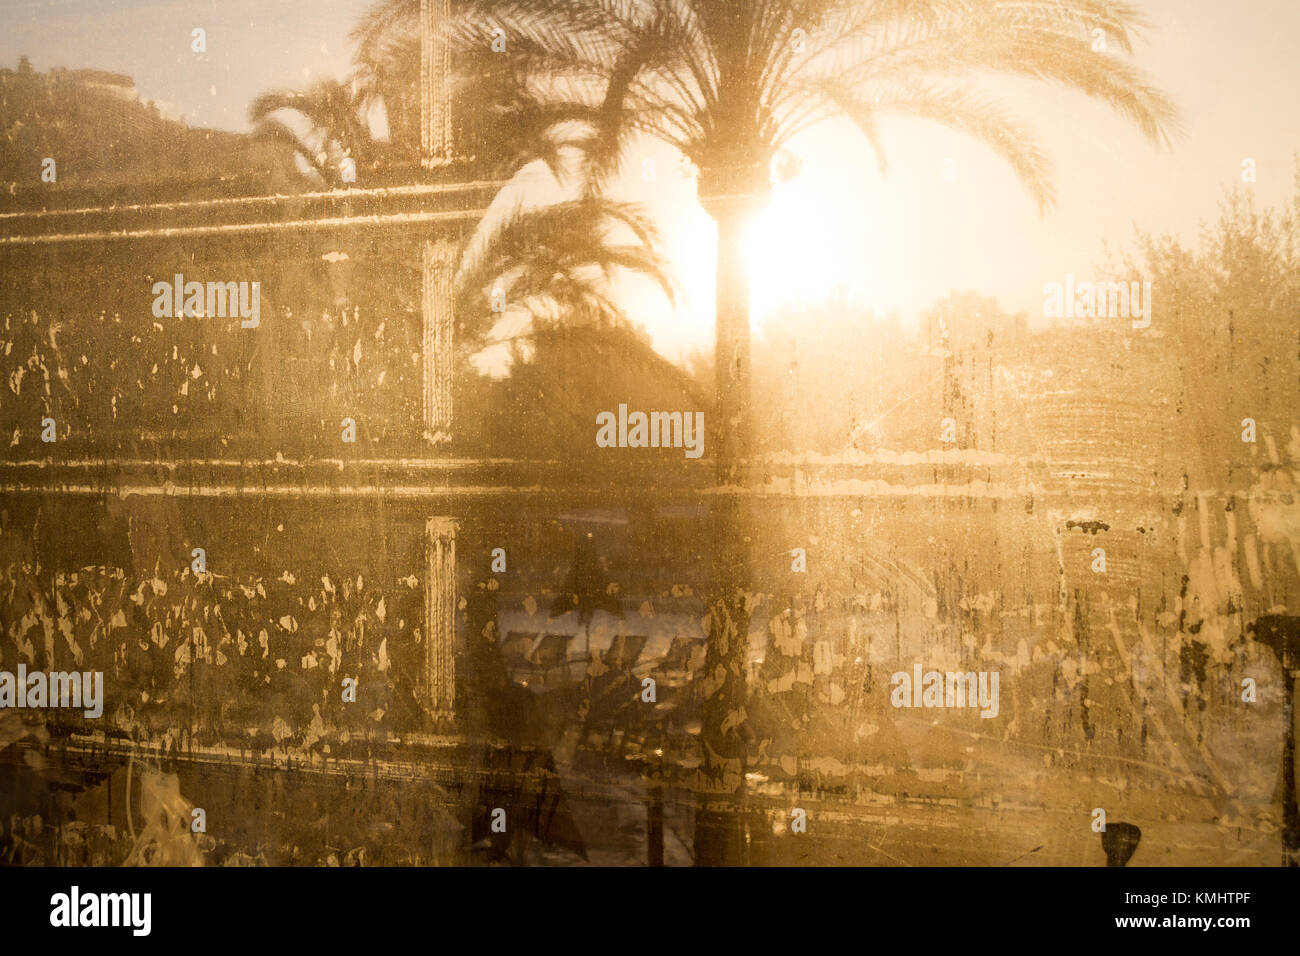 Palmen am frühen Morgen Sonnenschein durch Kondensation Plastikplanen abgedeckt Stockfoto